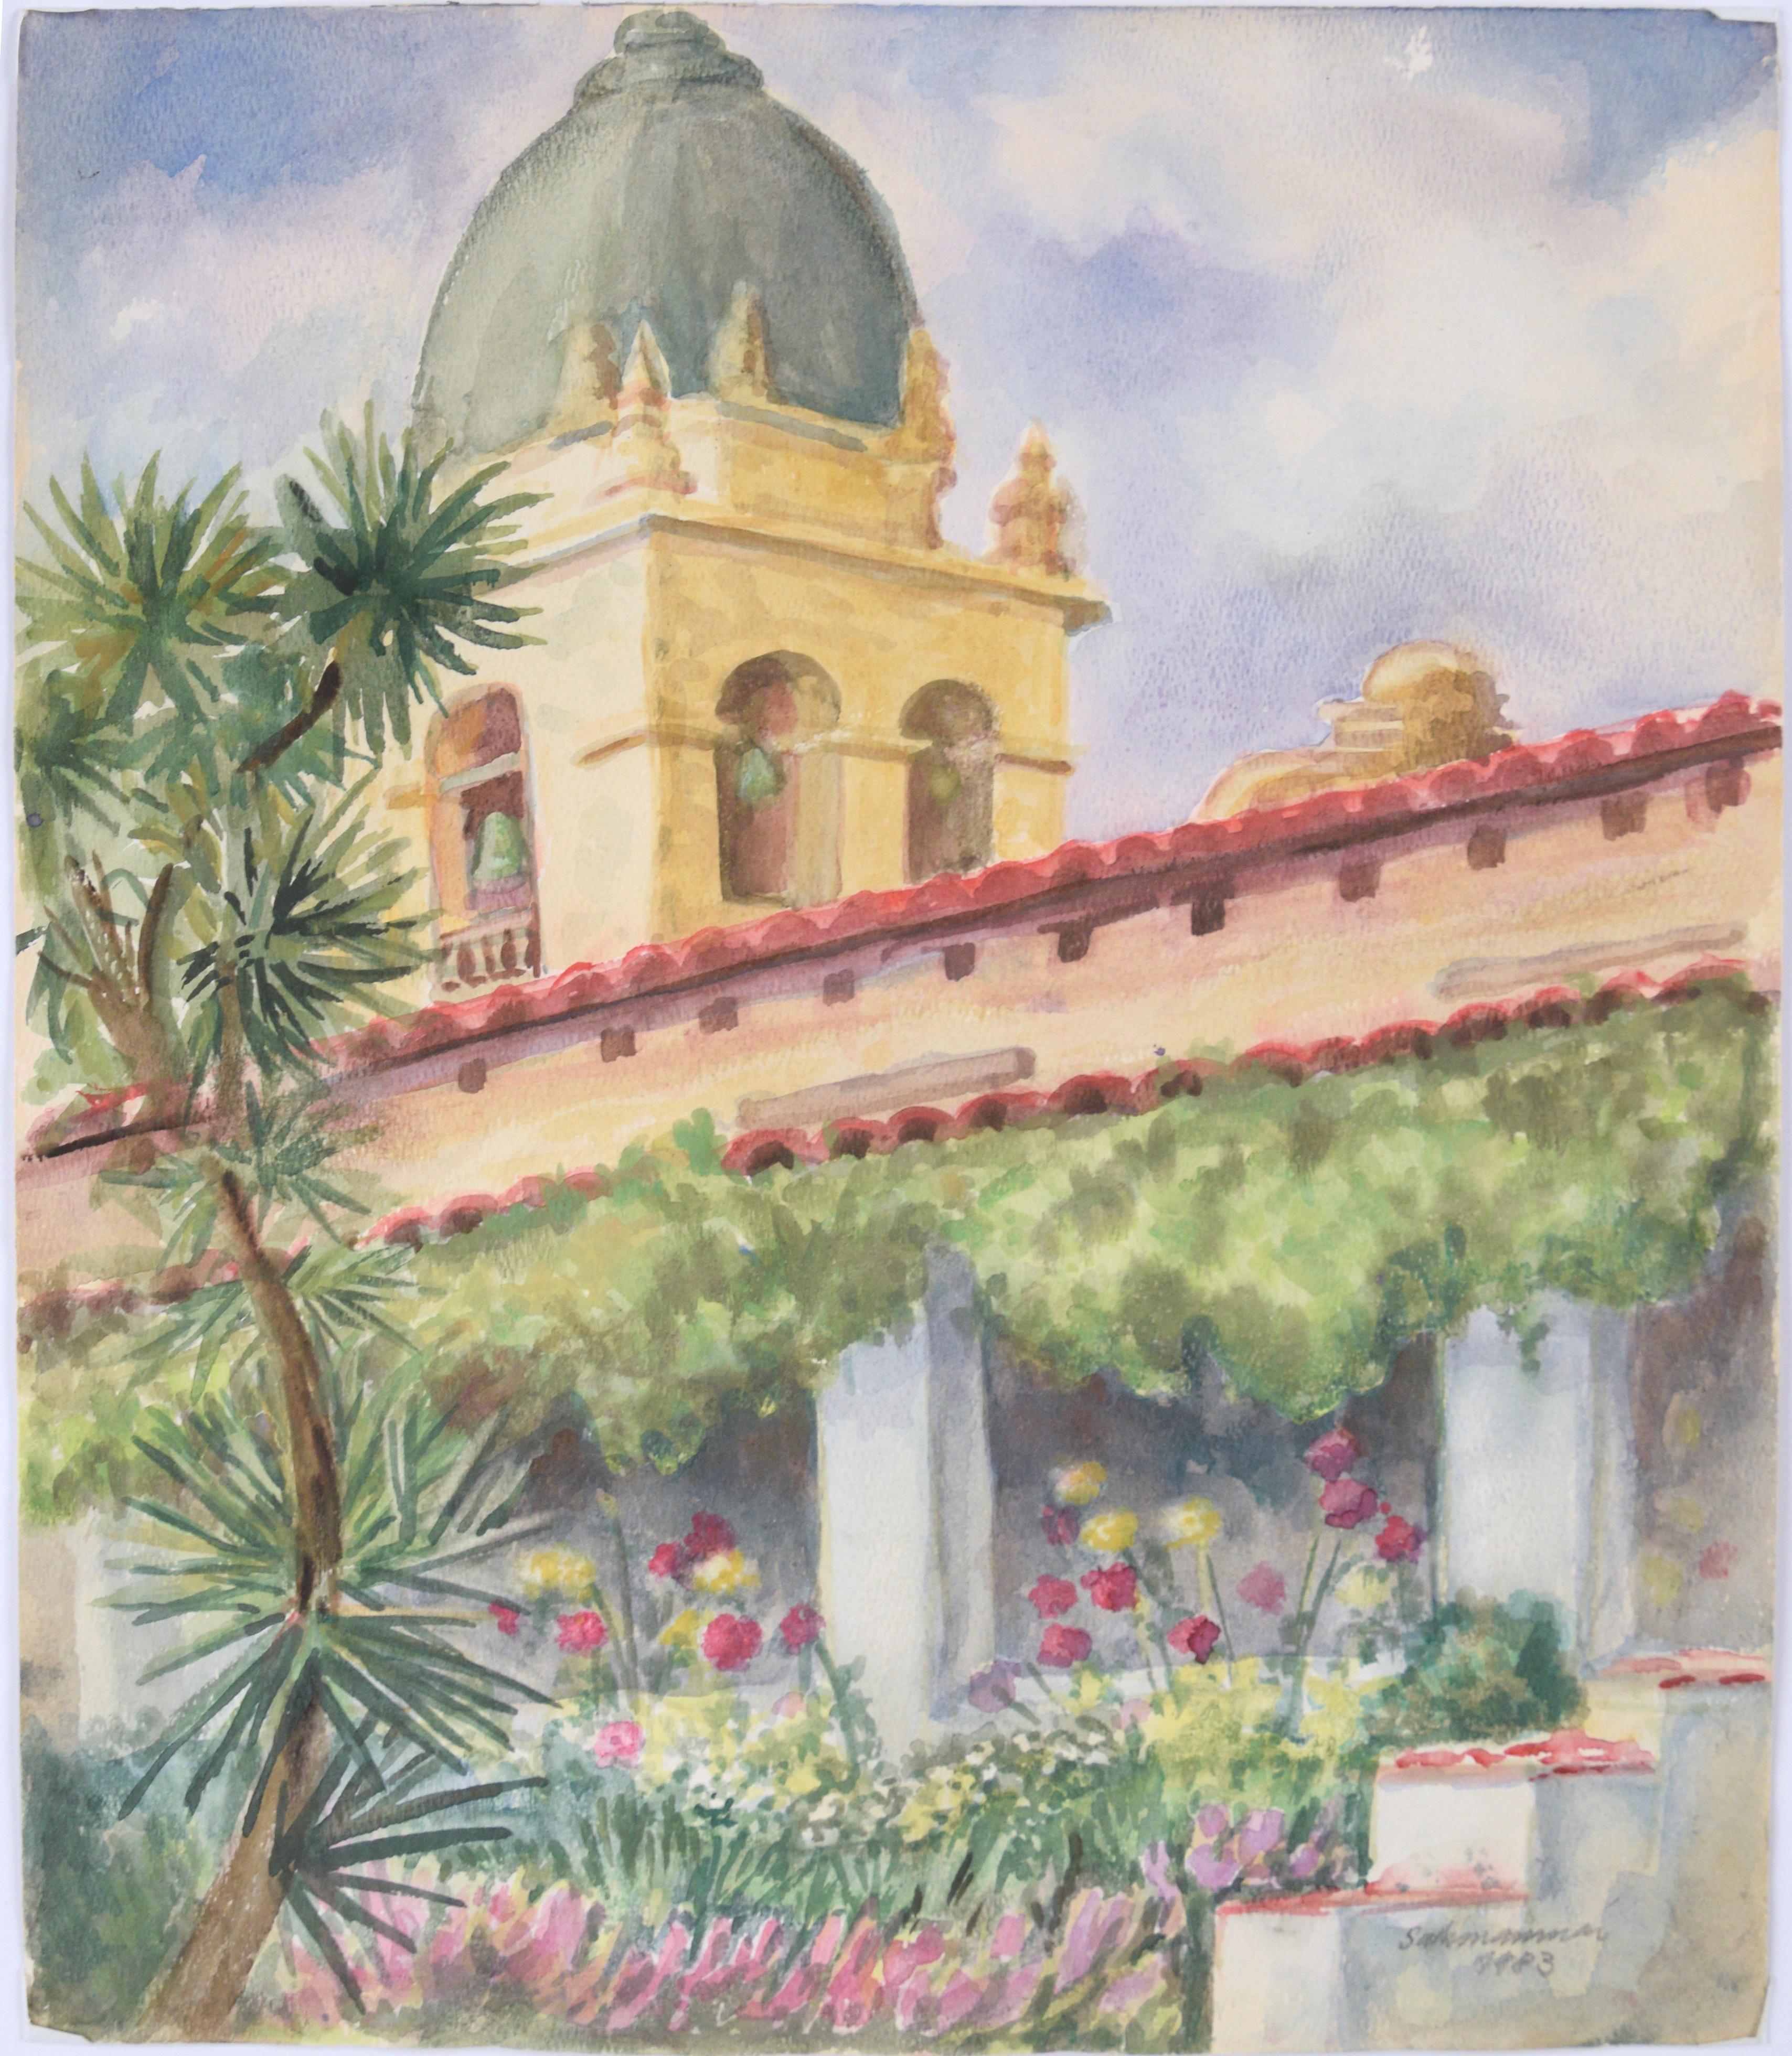 Carmel Mission im frühen Frühjahr – Original-Aquarellgemälde 1983

Dieses Aquarell, das von der Rückseite der Kuppel der Camel Mission aus aufgenommen wurde, ist farbenfroh mit Frühlingsblumen gemalt und wird von einer Palme und wogenden Wolken im